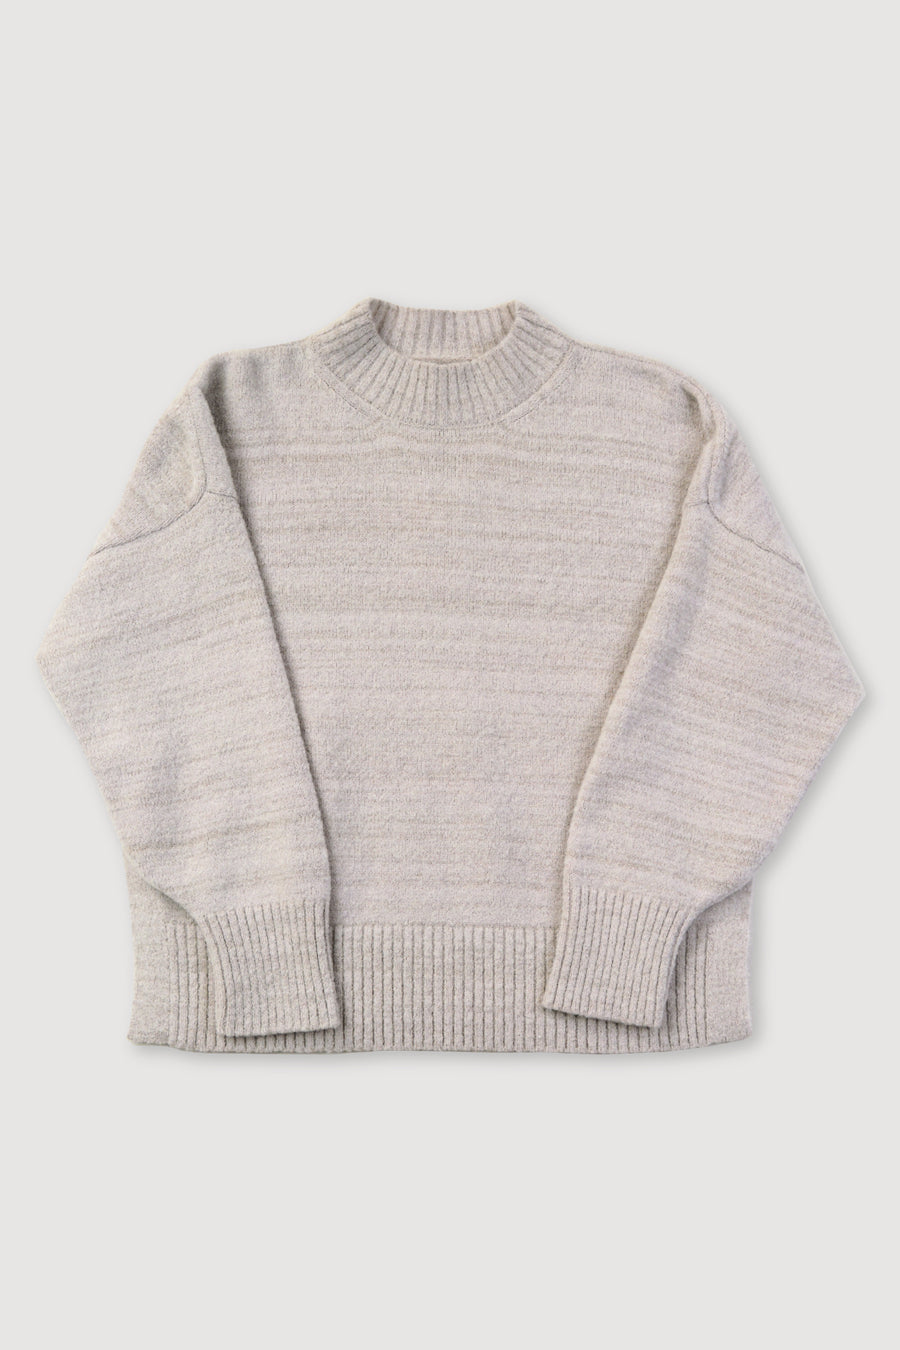 Shell Vela Sweater